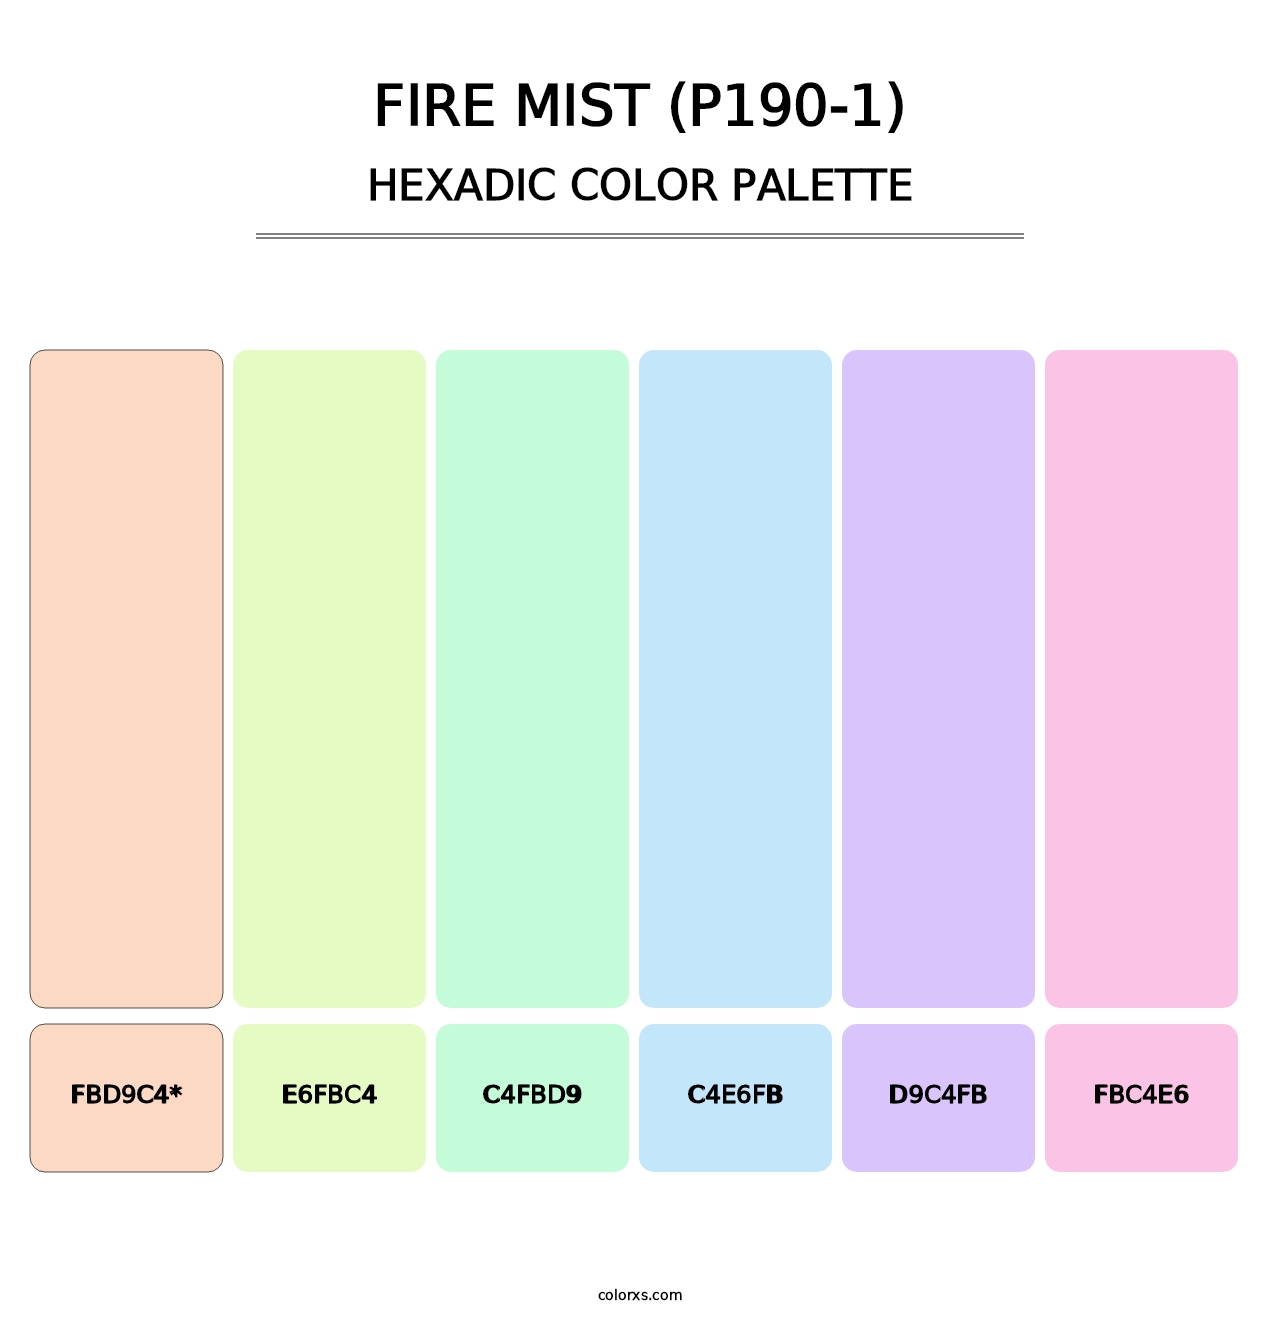 Fire Mist (P190-1) - Hexadic Color Palette